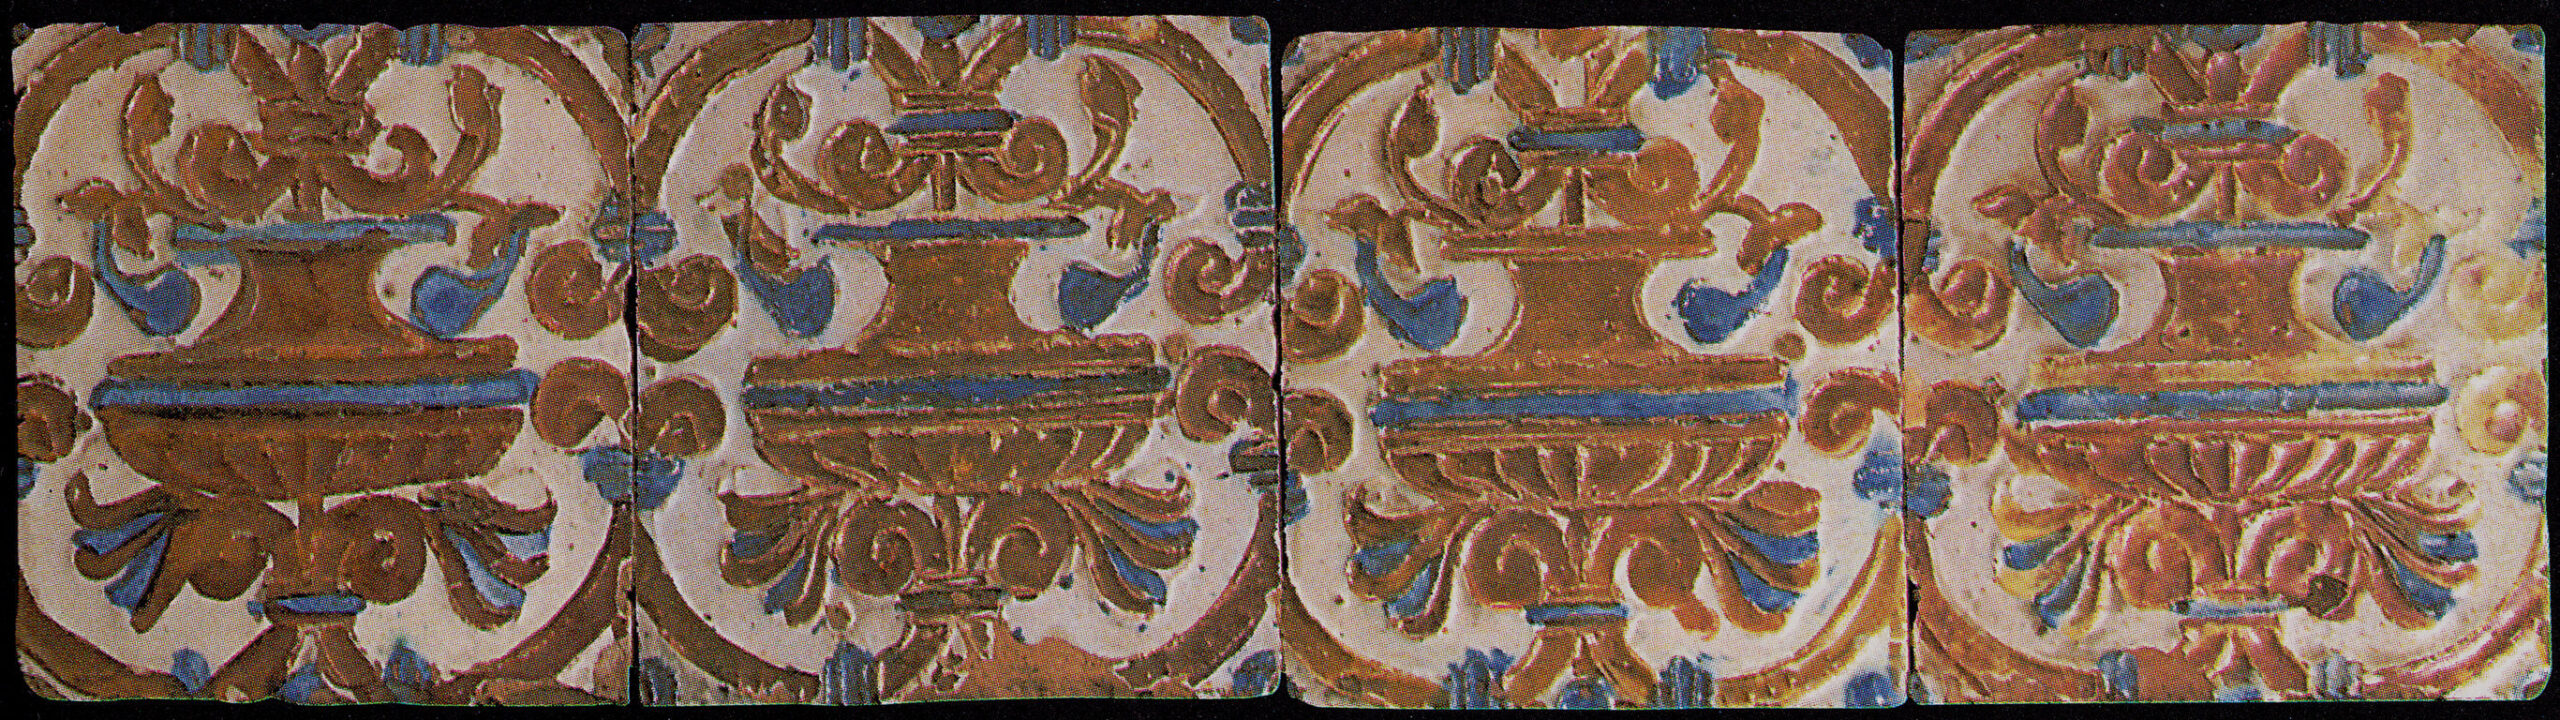 00378. Panel de azulejos de arista y reflejo dorado. Colección Carranza.